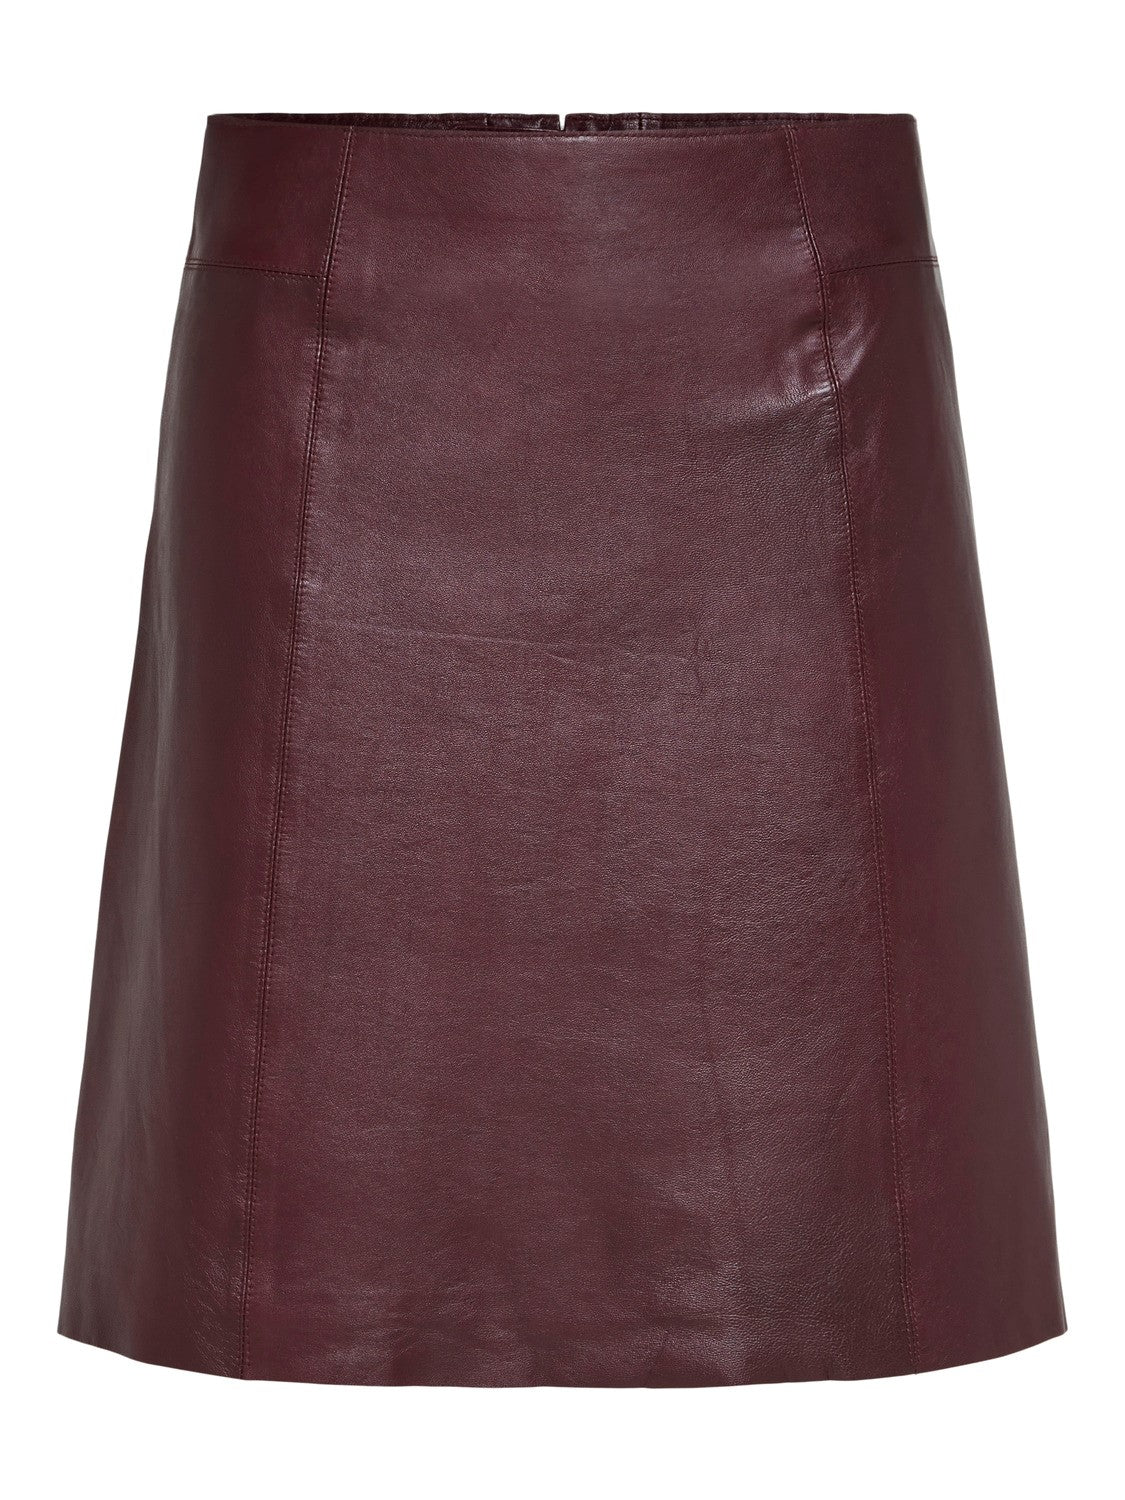 Leather Mini Skirt - Selected Femme